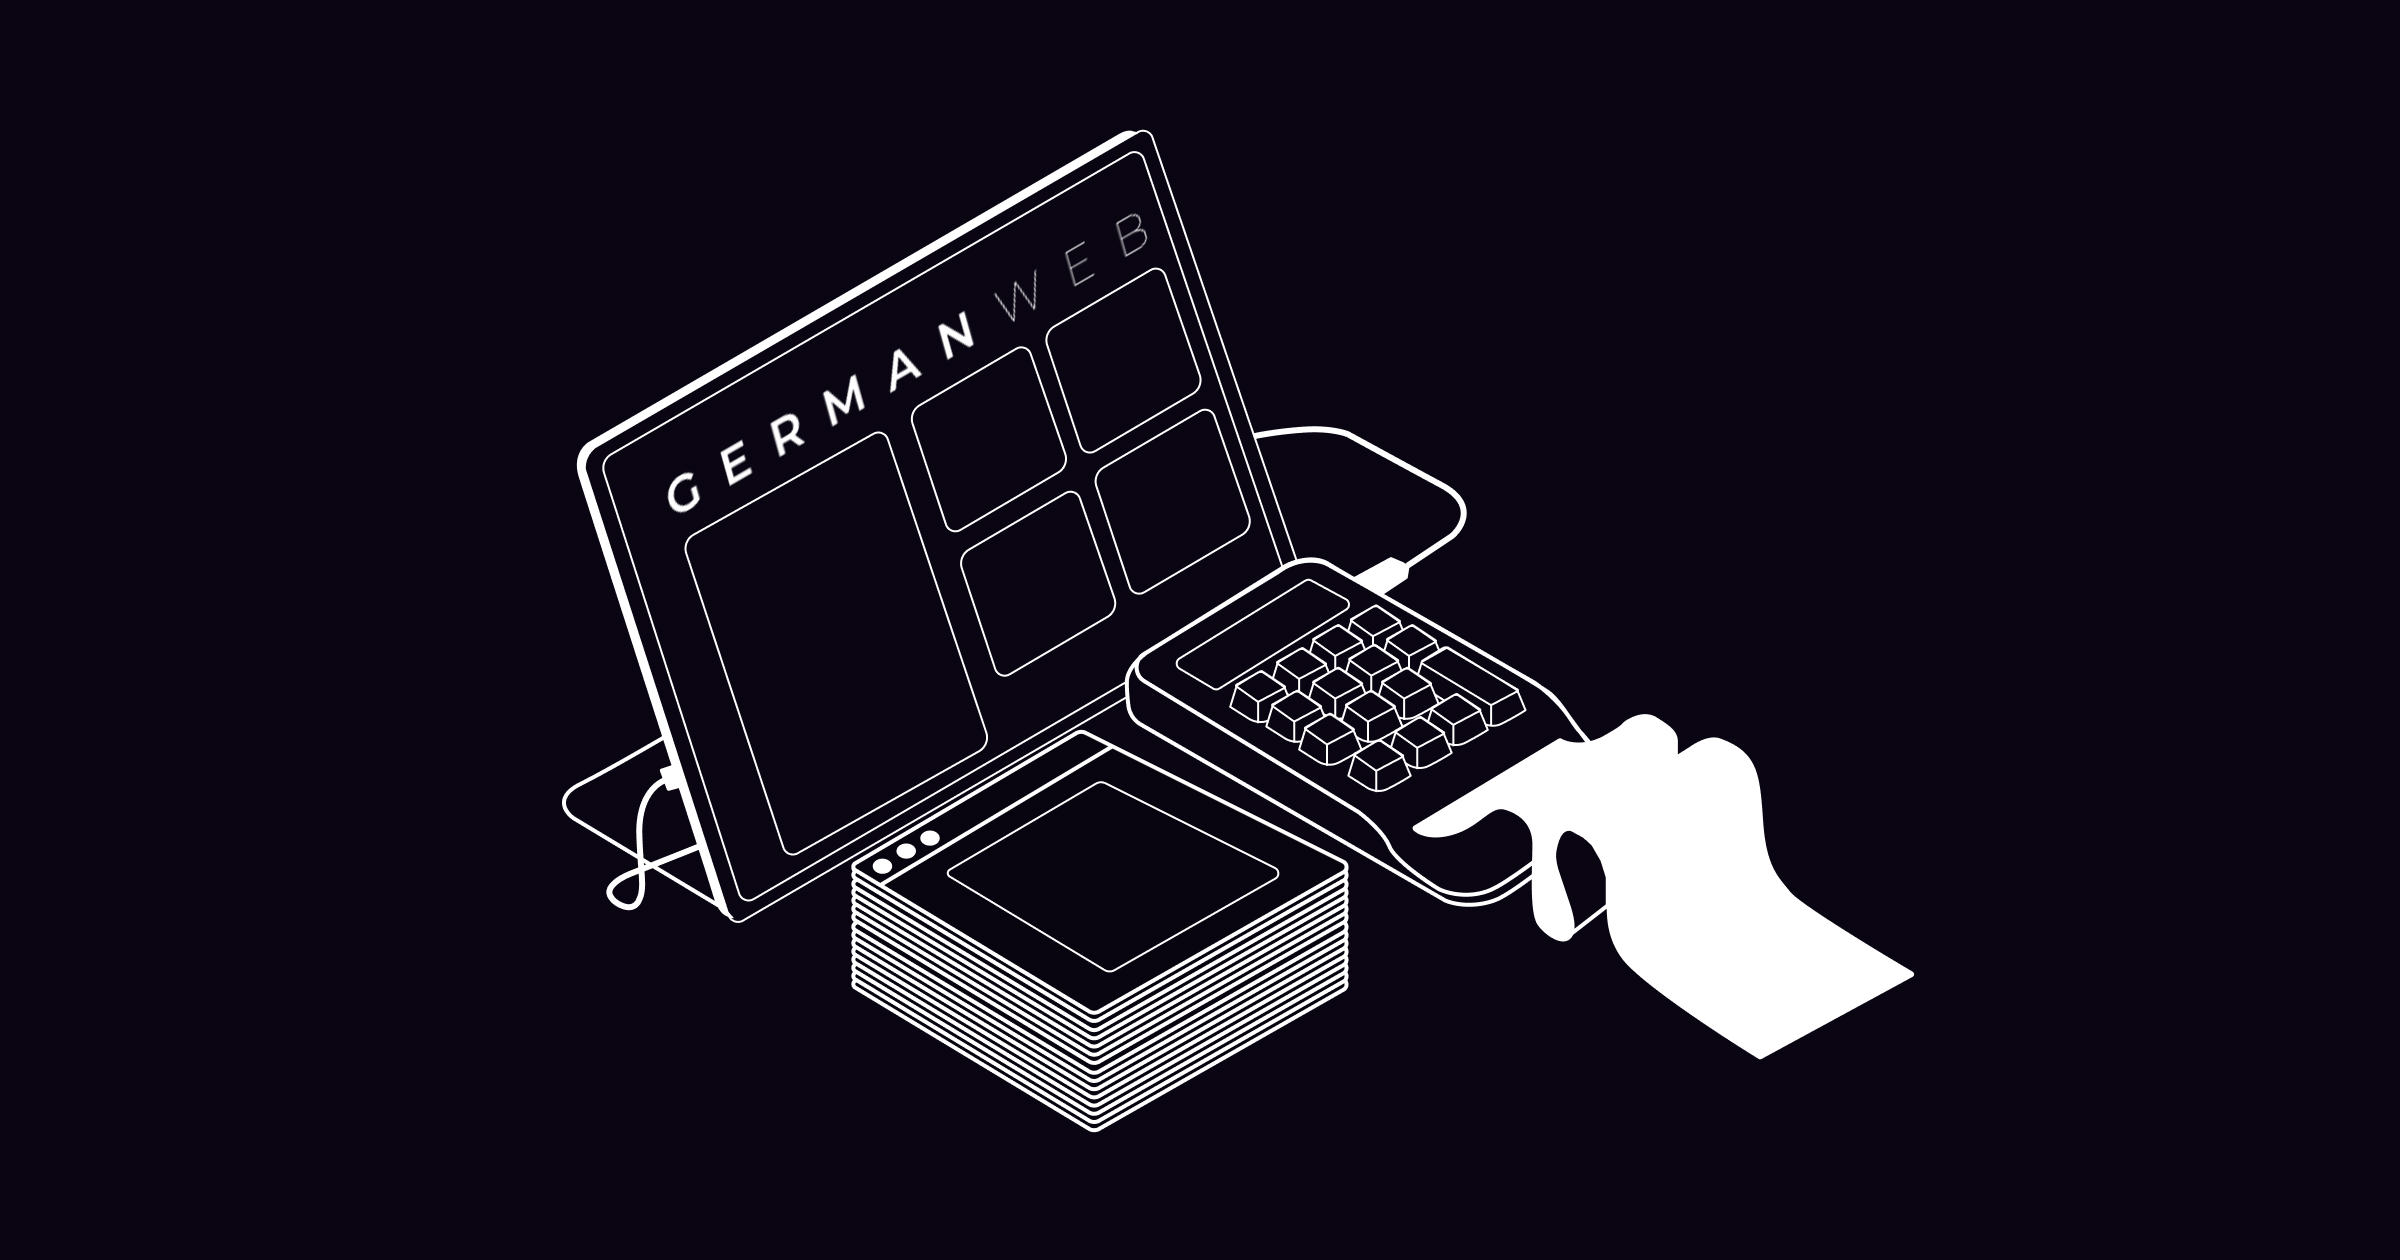 German Web